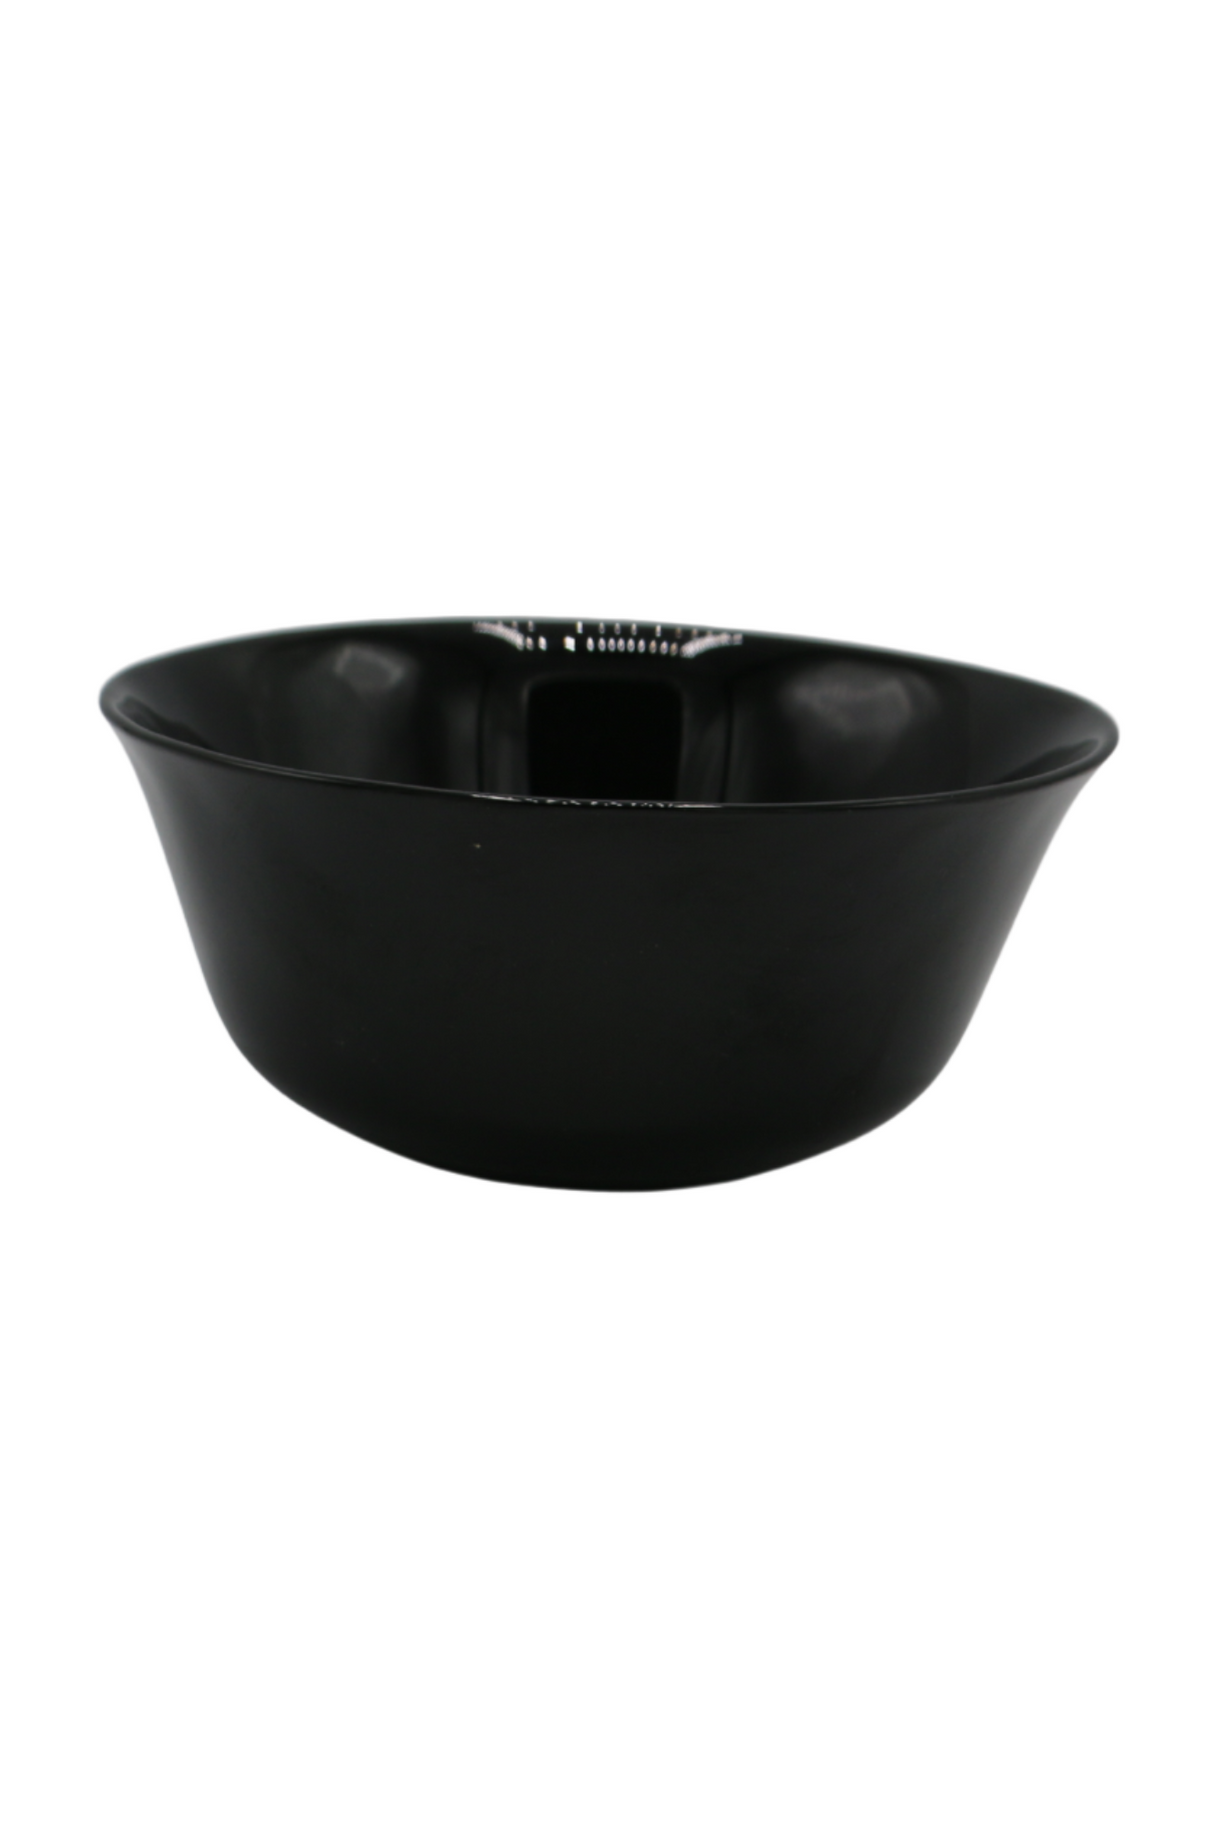 bm bowl 6" square china